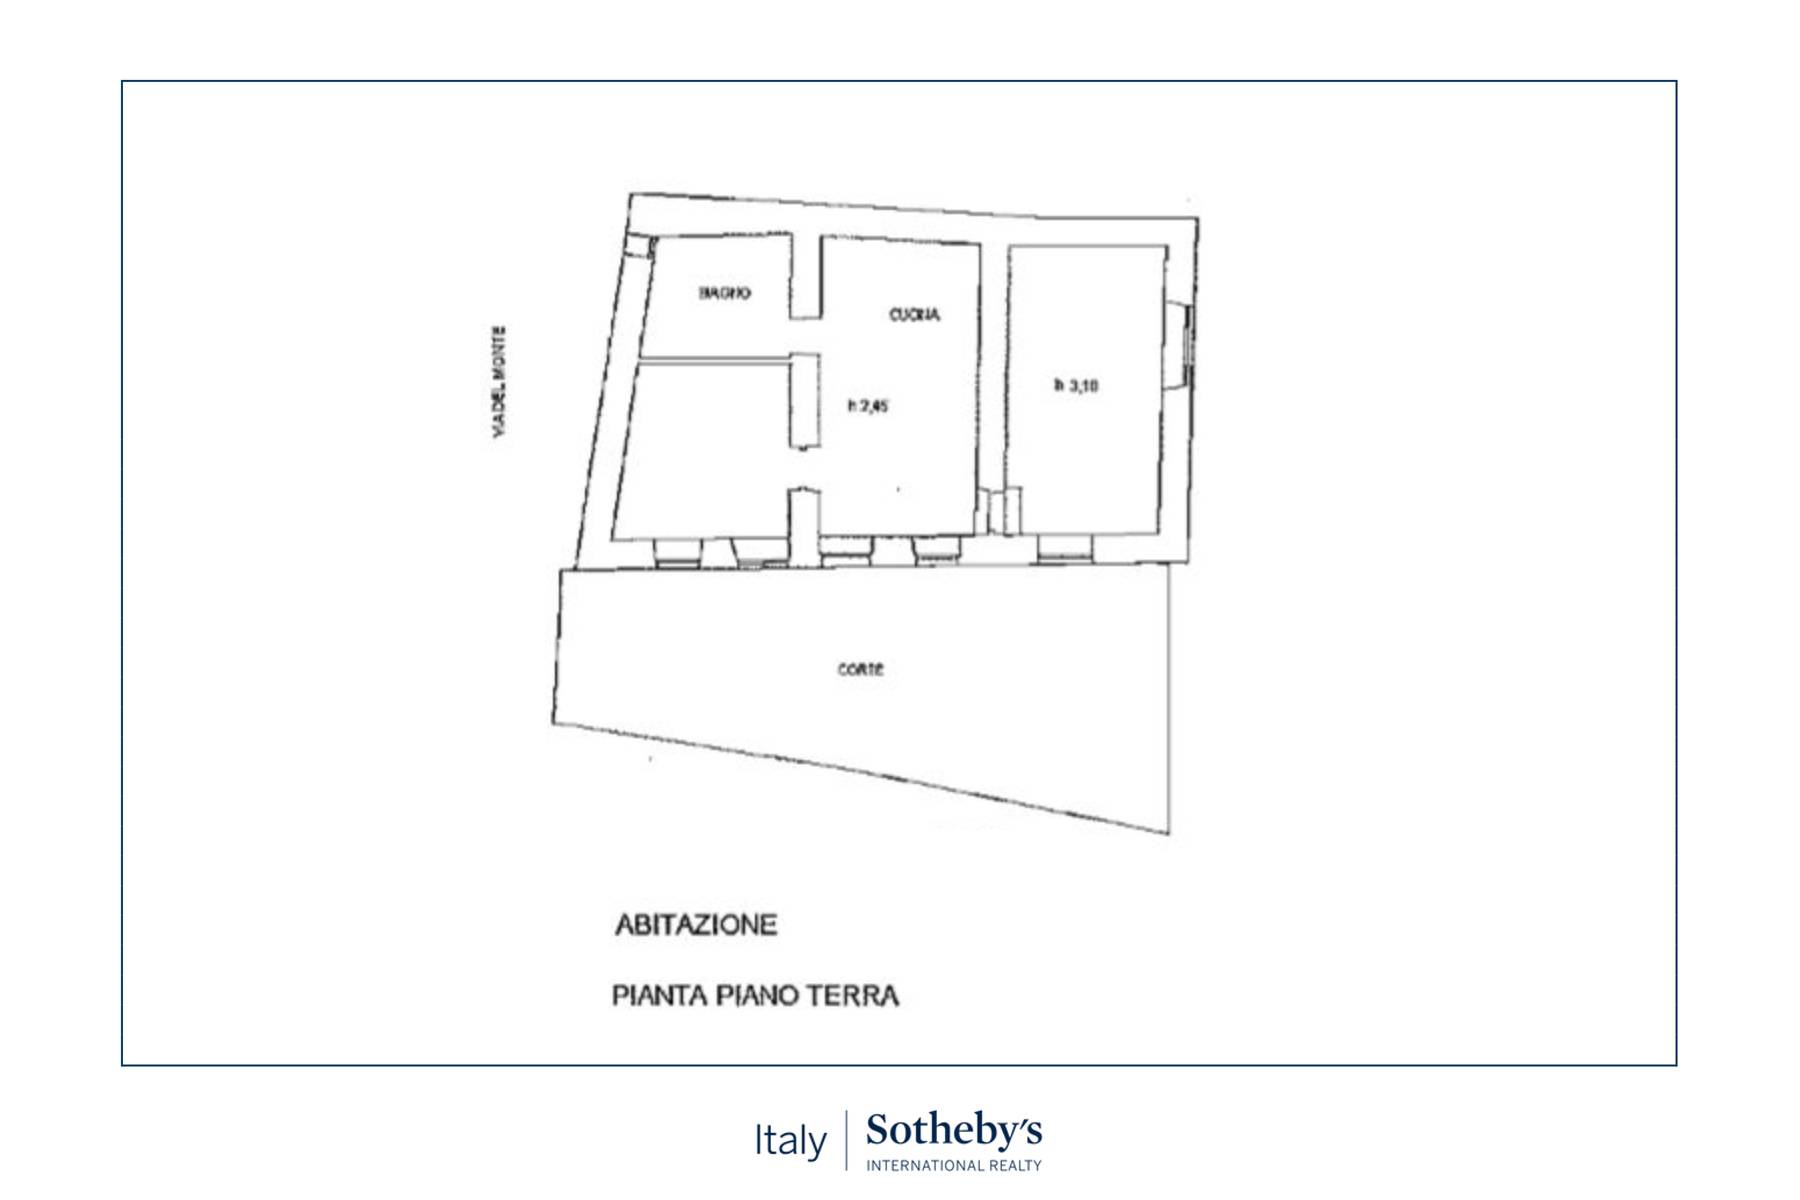 Appartamento in Vendita a Trevignano Romano: 3 locali, 85 mq - Foto 16